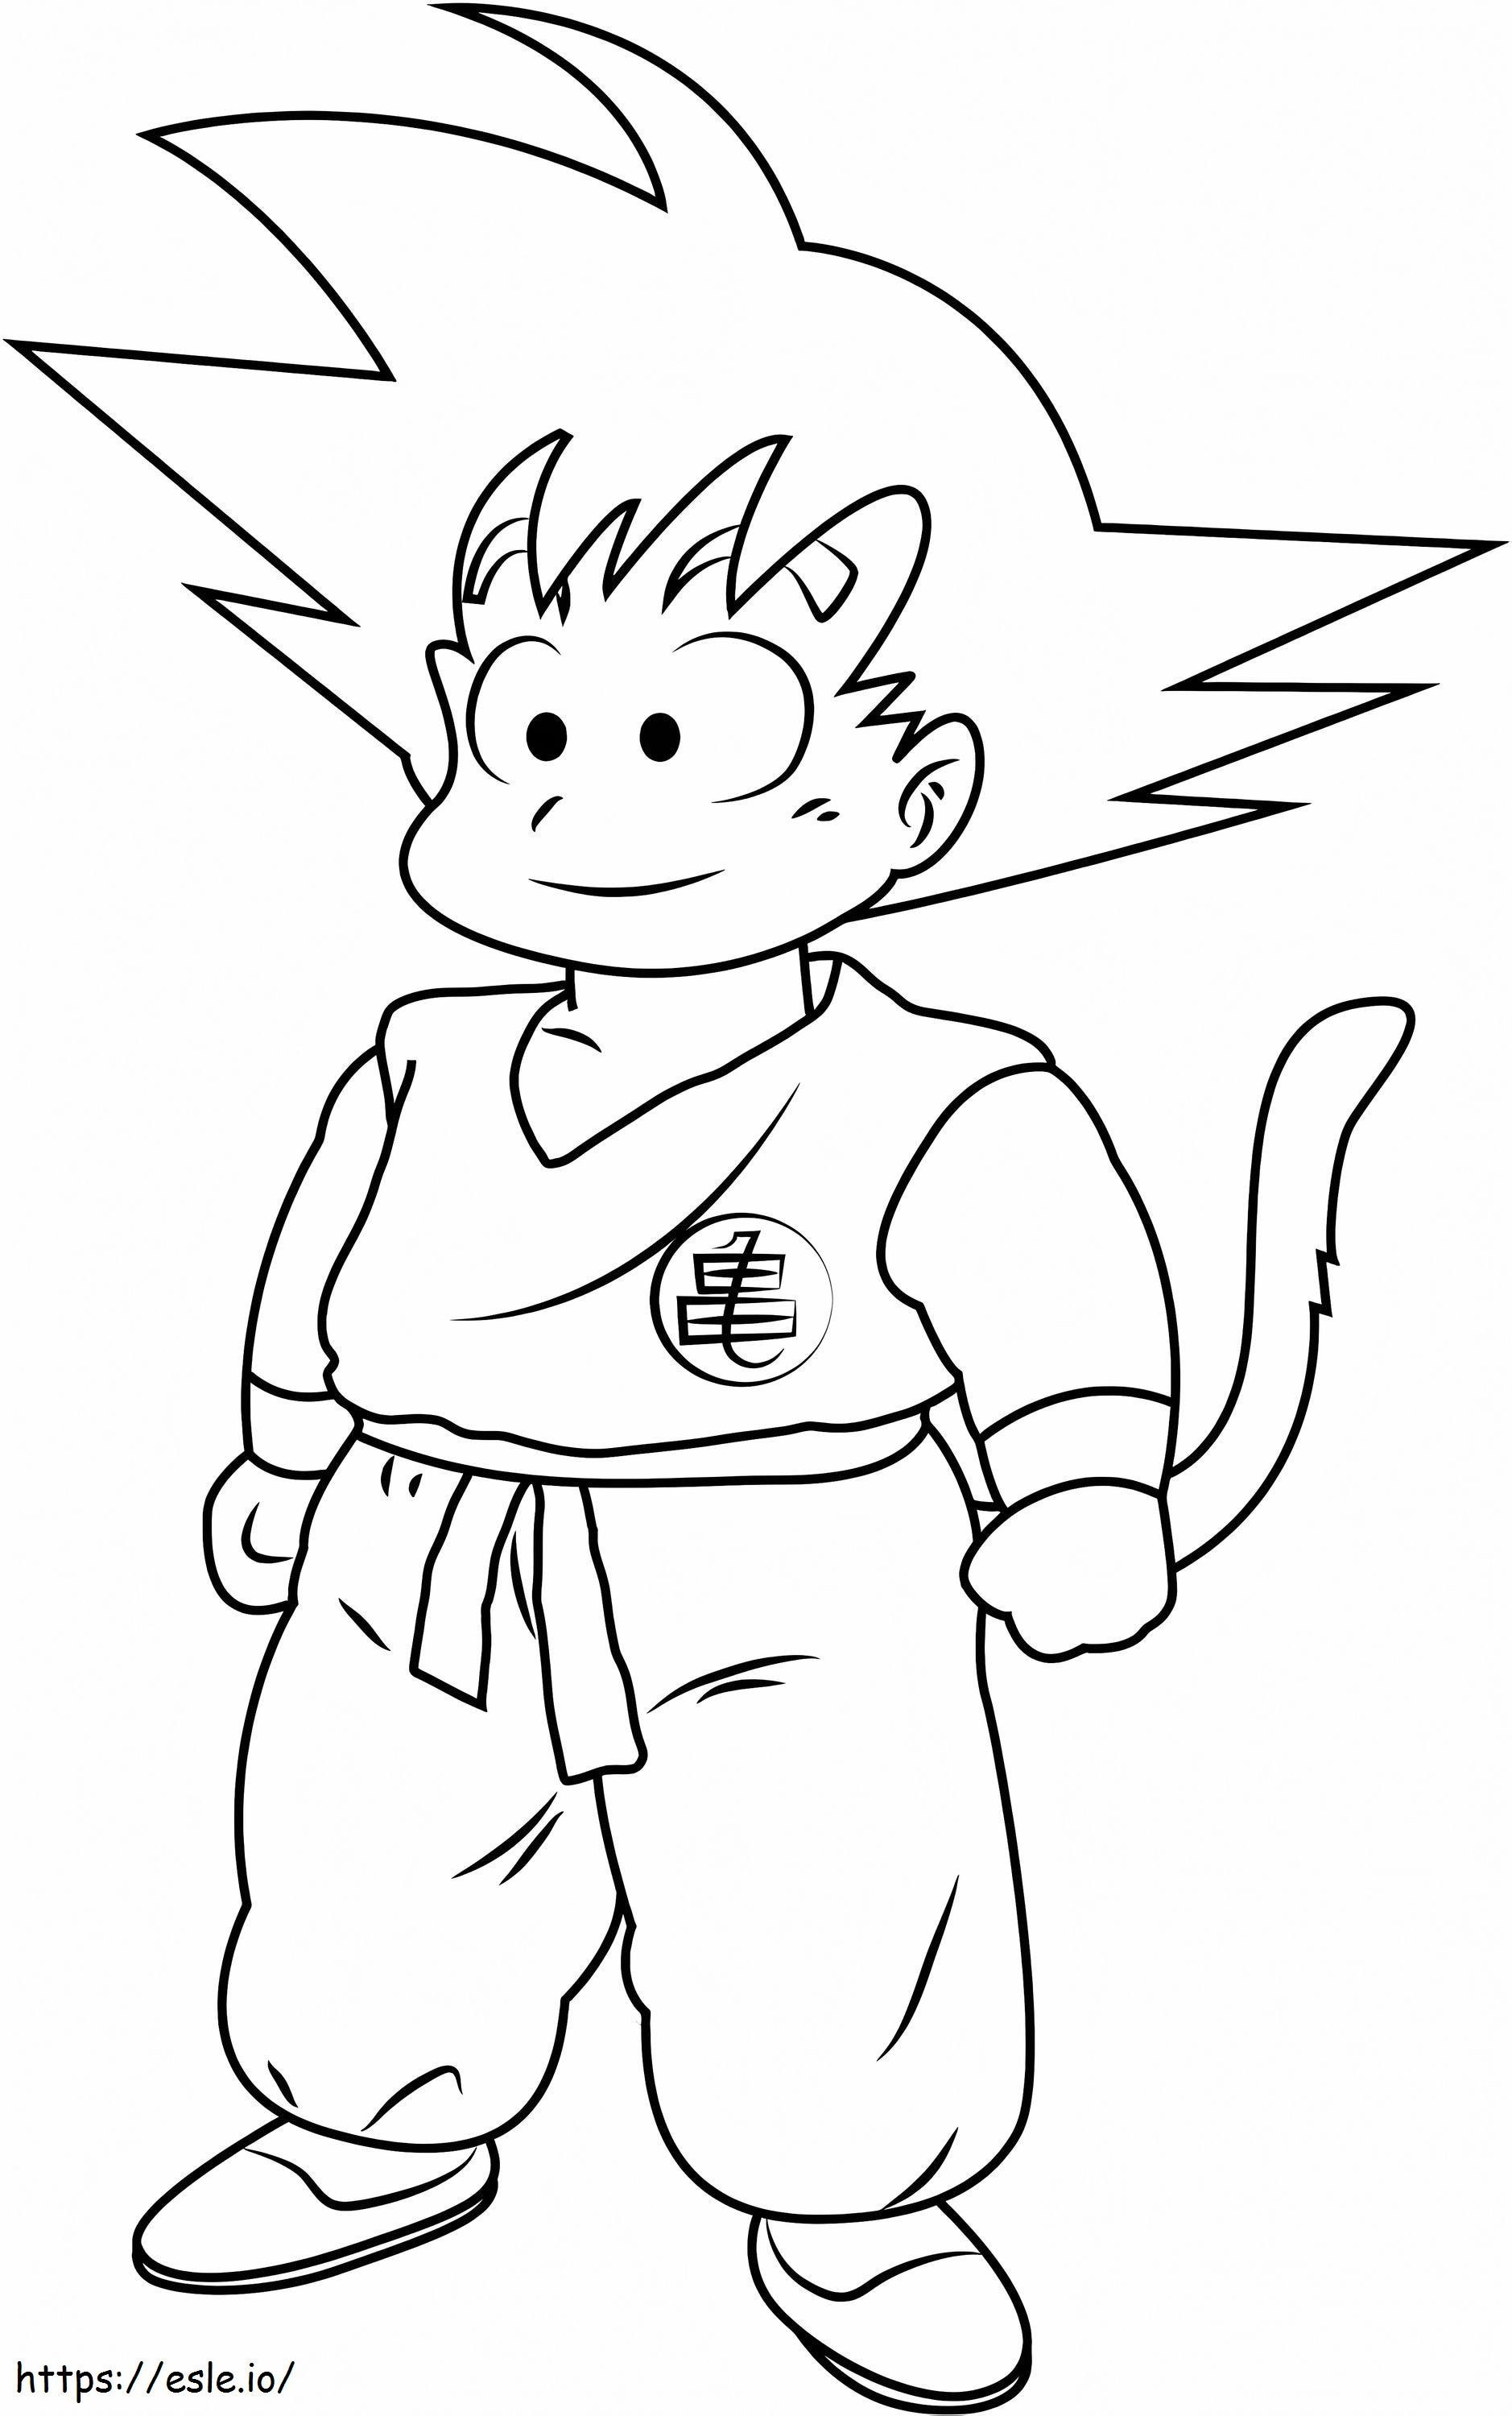 Lindo Nino Goku coloring page